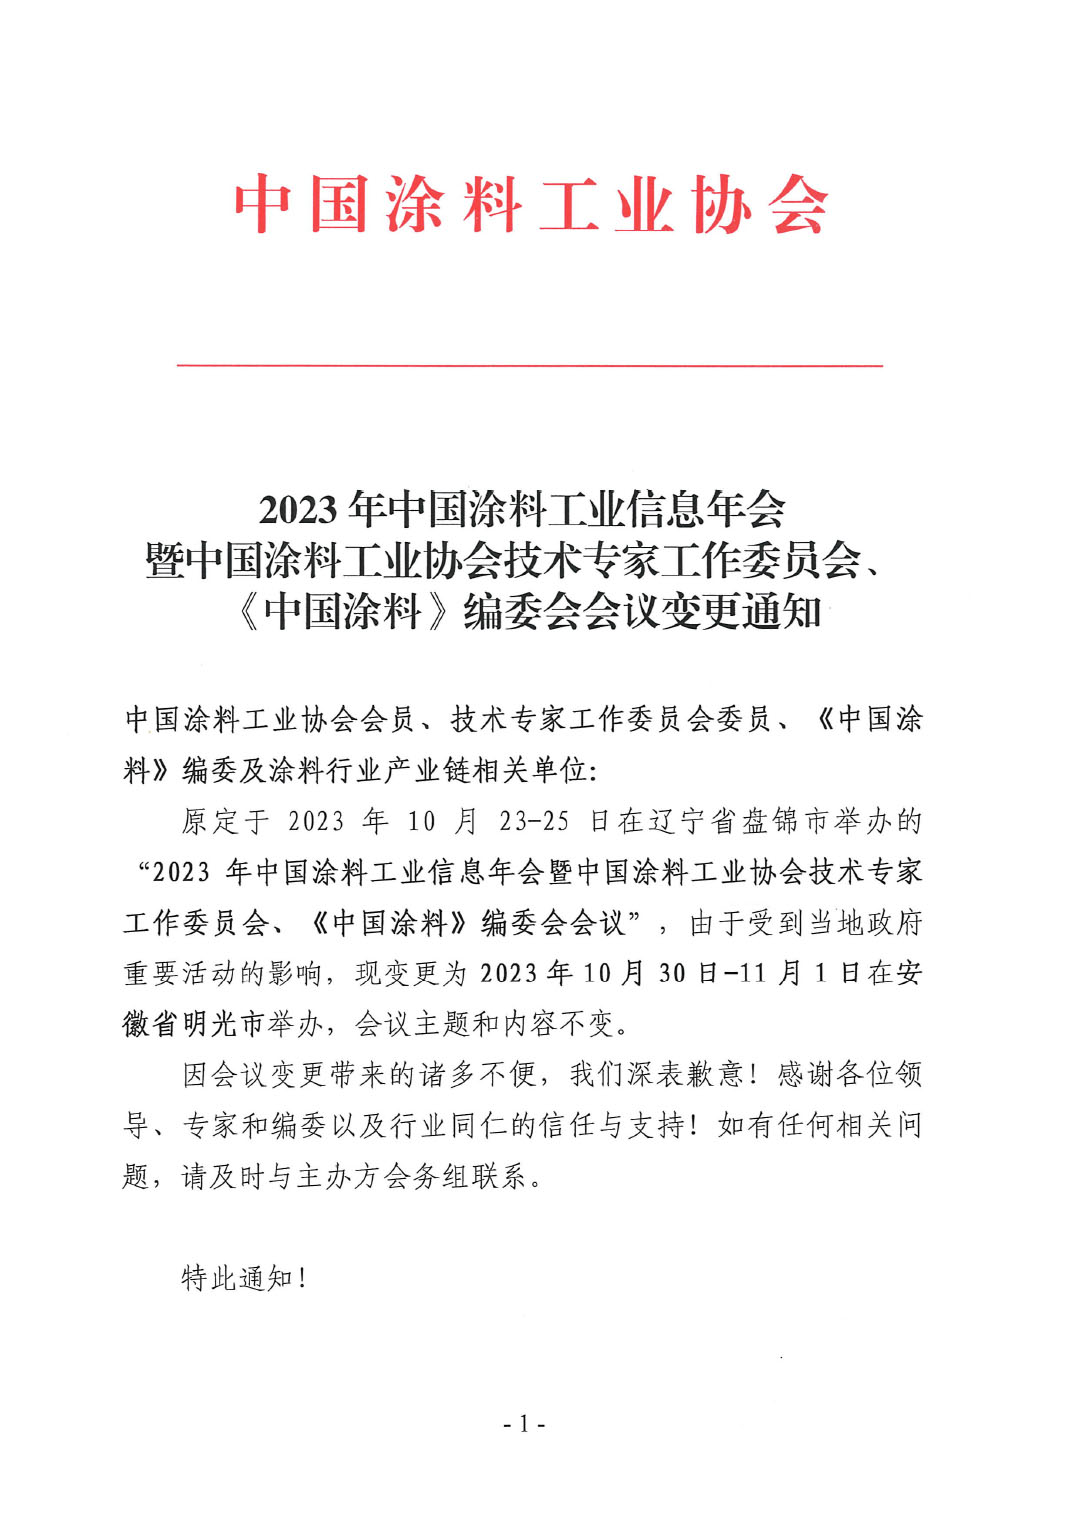 03 2023年中國涂料工業信息年會變更通知1017-1